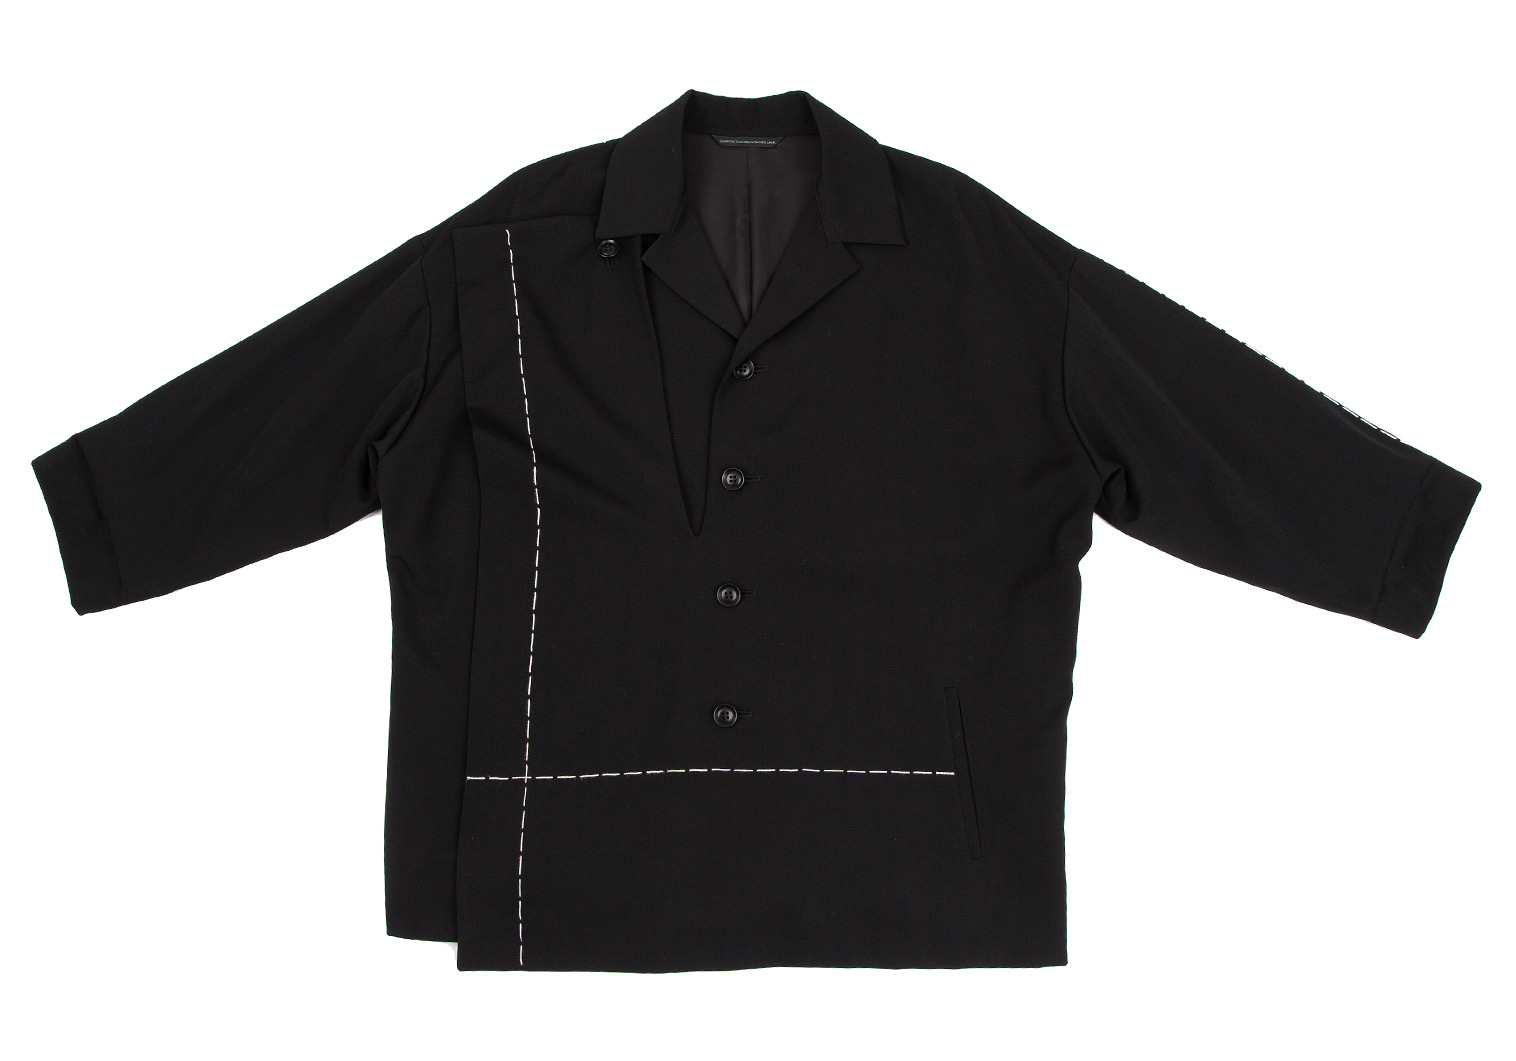 ワイズ 変形ジャケット 2 ブラック ギャバ 安全Shopping - スーツ